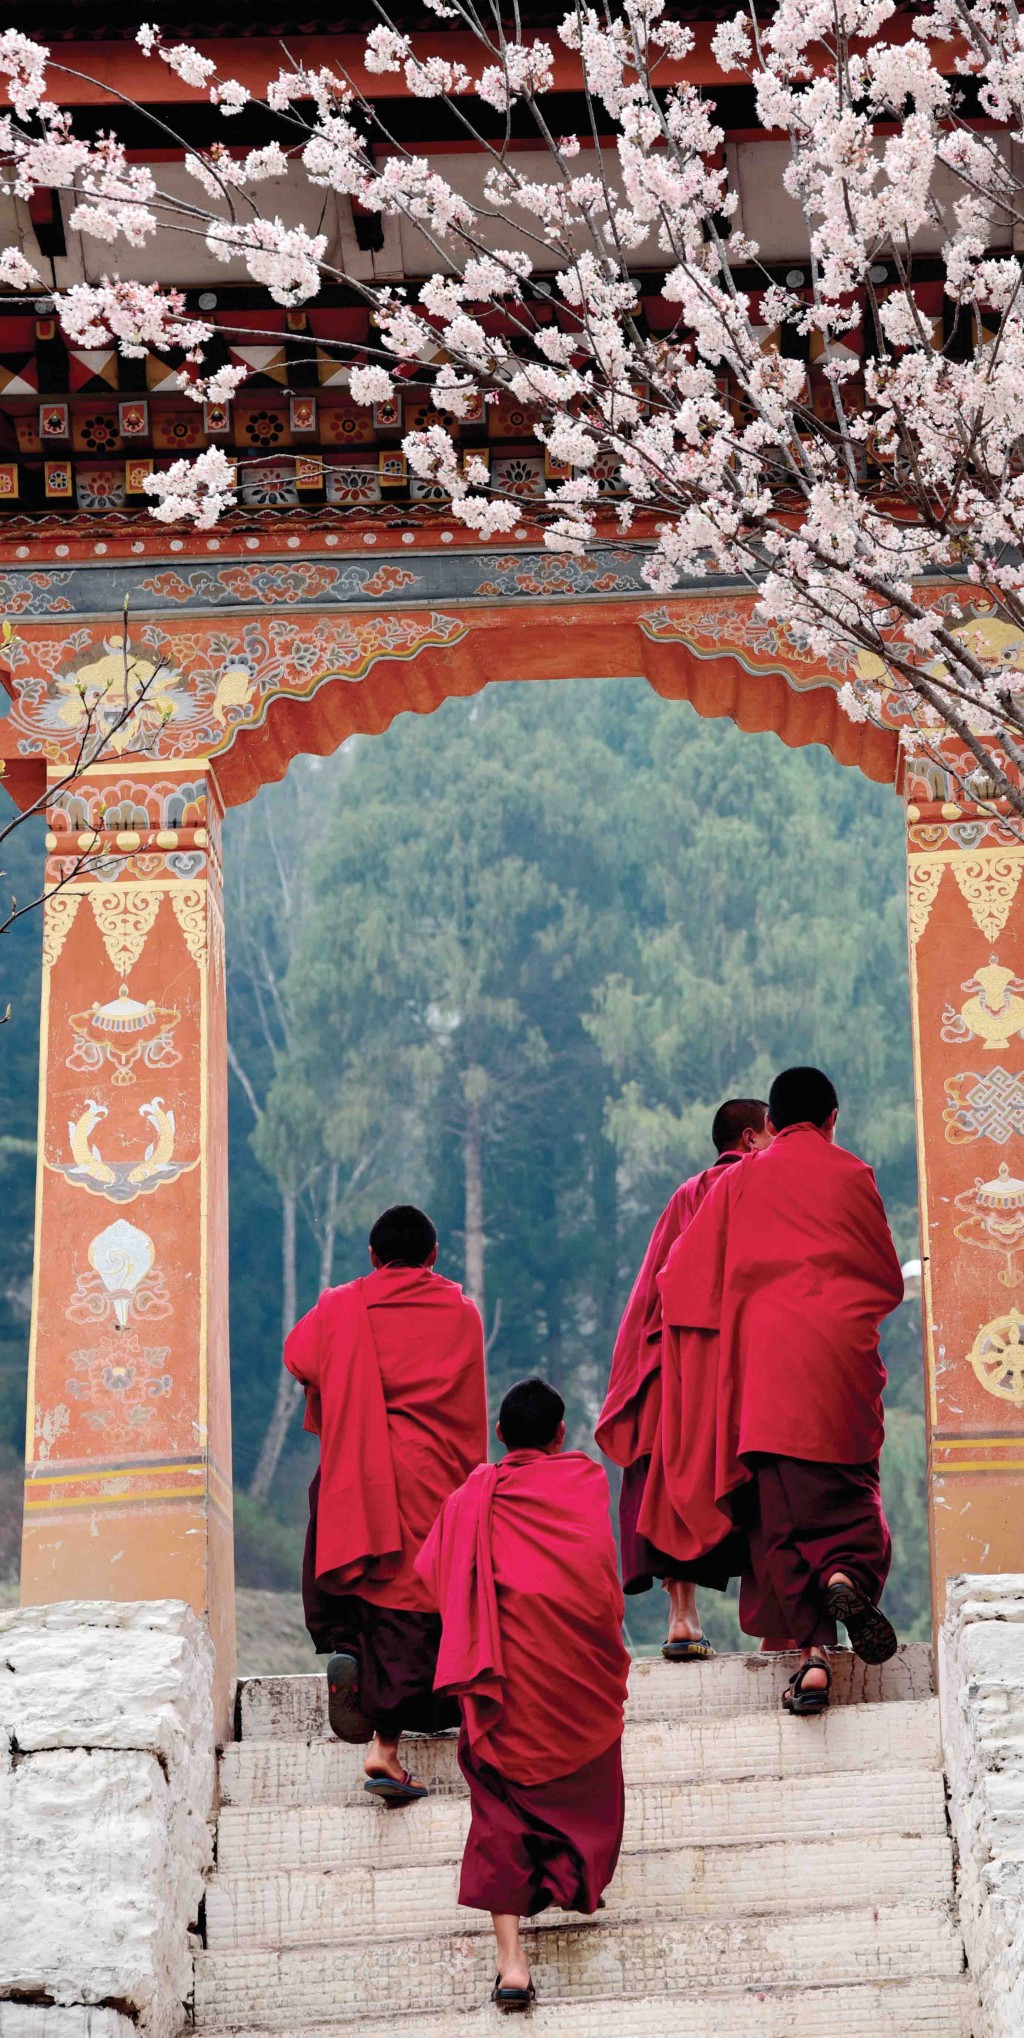 Du lịch Bhutan - chuyến đi đầy ắp nỗi nhớ